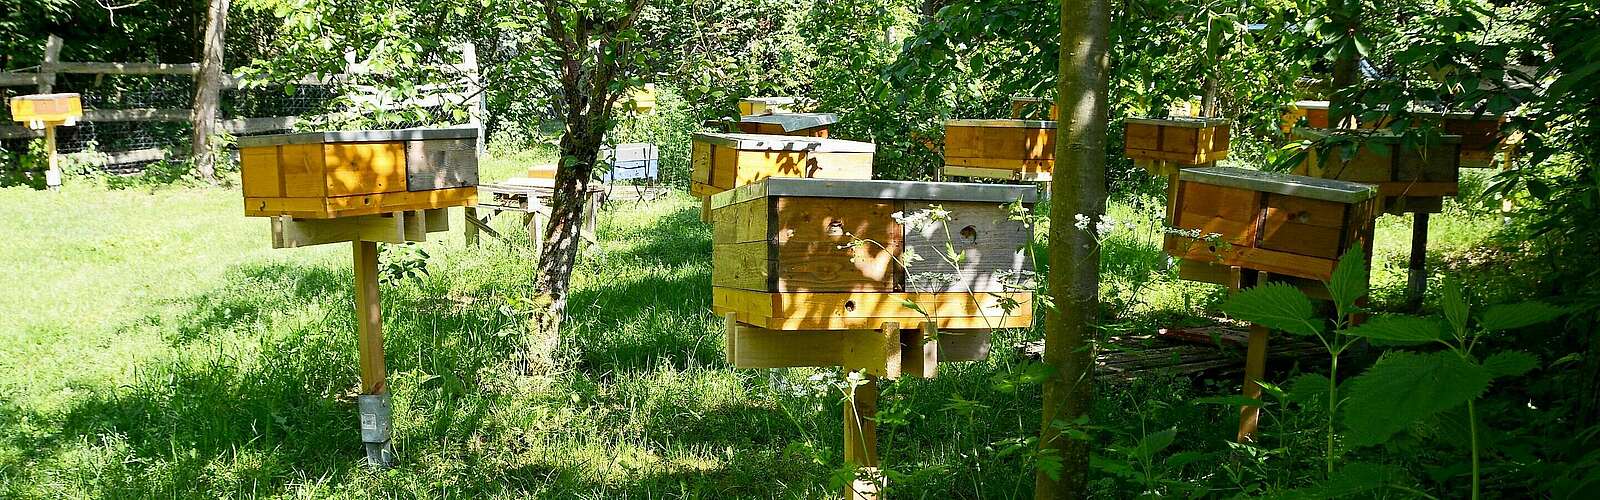 Eine Vermehrungsstation für Bienenvölker,
        
    

        Foto: TMB Tourismus-Marketing Brandenburg GmbH/Nina Lenze